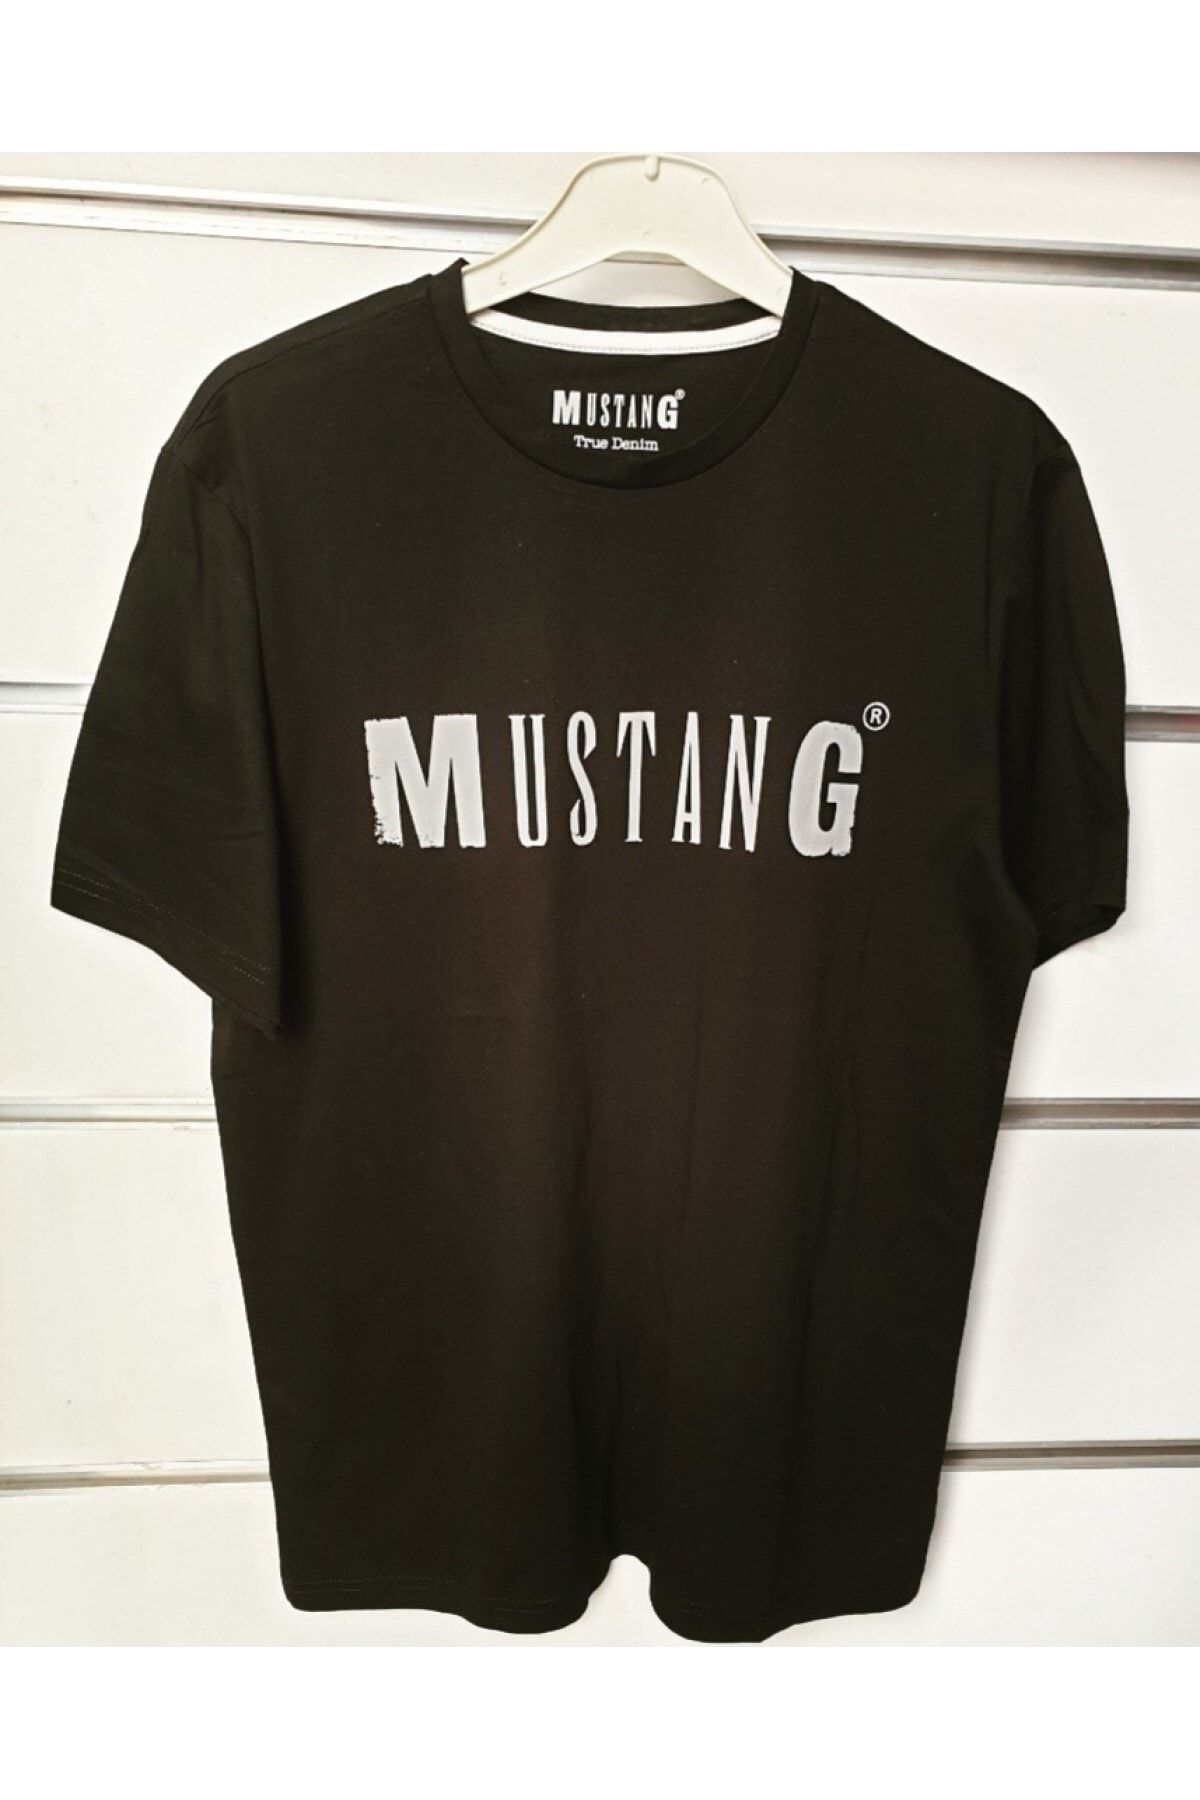 Mustang Unisex T-shirt